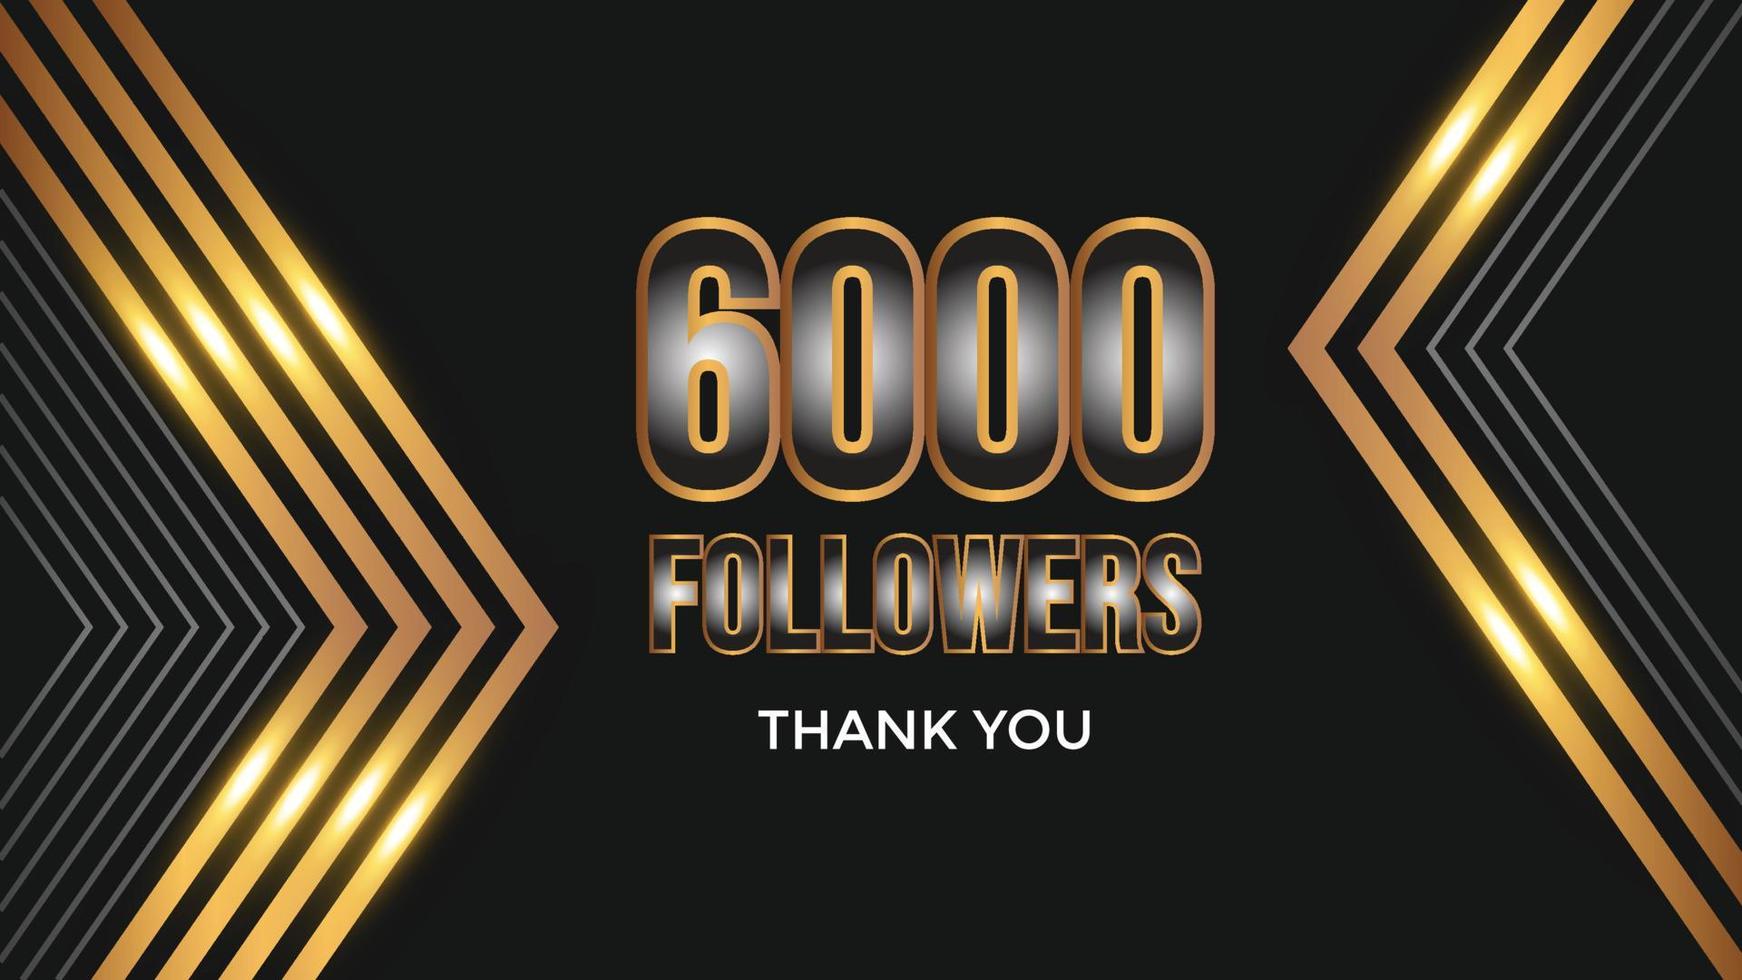 gebruiker dank u vieren van 6000 abonnees en volgers. 6k volgers dank u vector